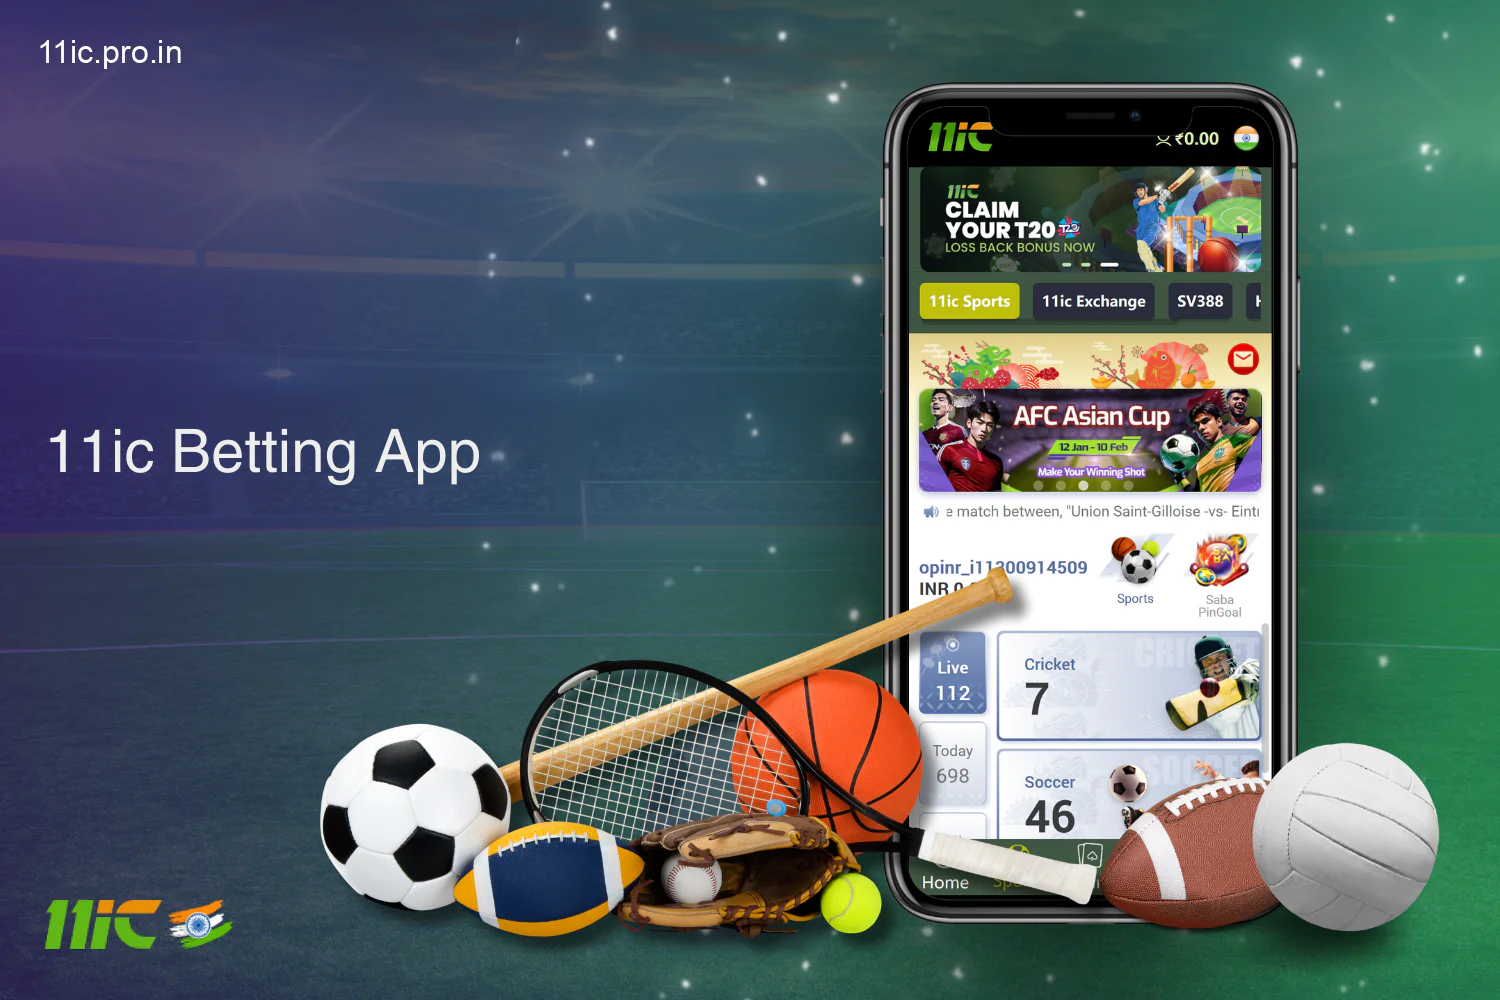 भारत के उपयोगकर्ताओं के लिए 11ic सट्टेबाजी ऐप में लोकप्रिय खेल और ईस्पोर्ट्स, सट्टेबाजी एक्सचेंज, ऑनलाइन और लाइव सट्टेबाजी के लिए पूर्ण टूर्नामेंट सूची तक पहुंच है।